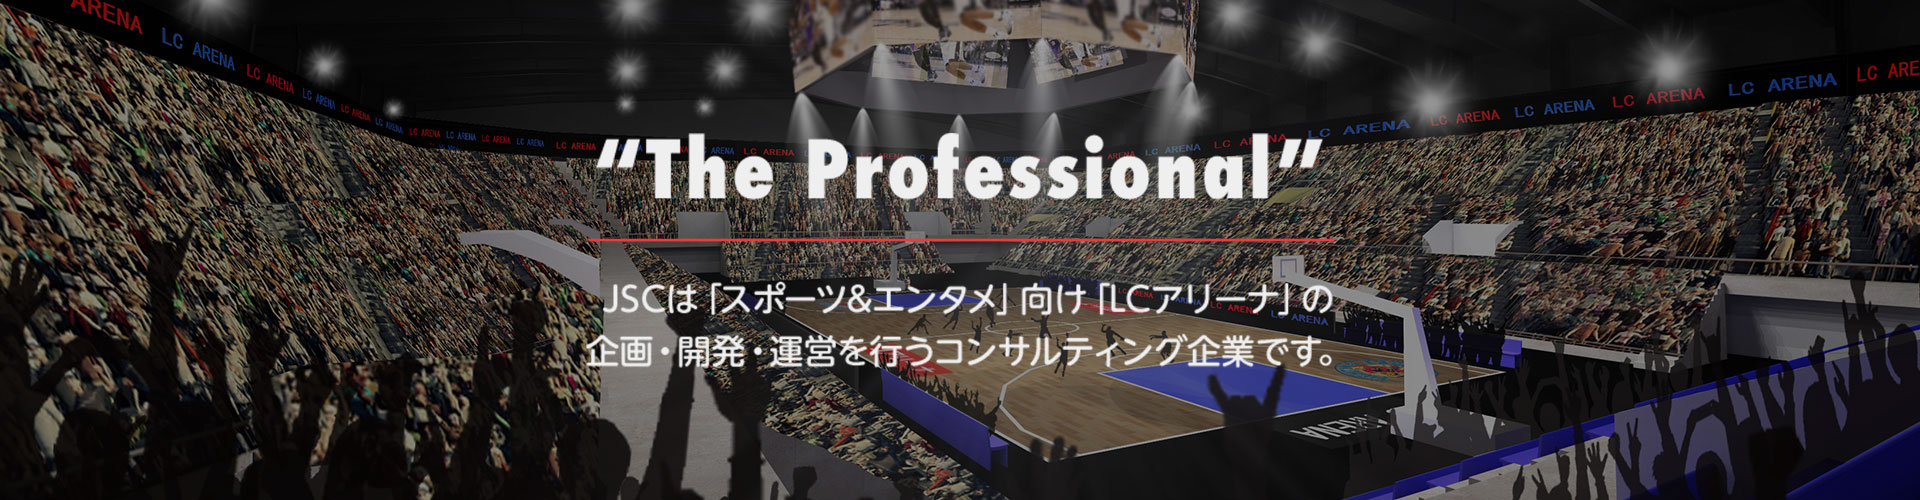 “The Professional” JSCは「スポーツ&エンタメ」向け「LCアリーナ」の企画・開発・運営を行うコンサルティング企業です。